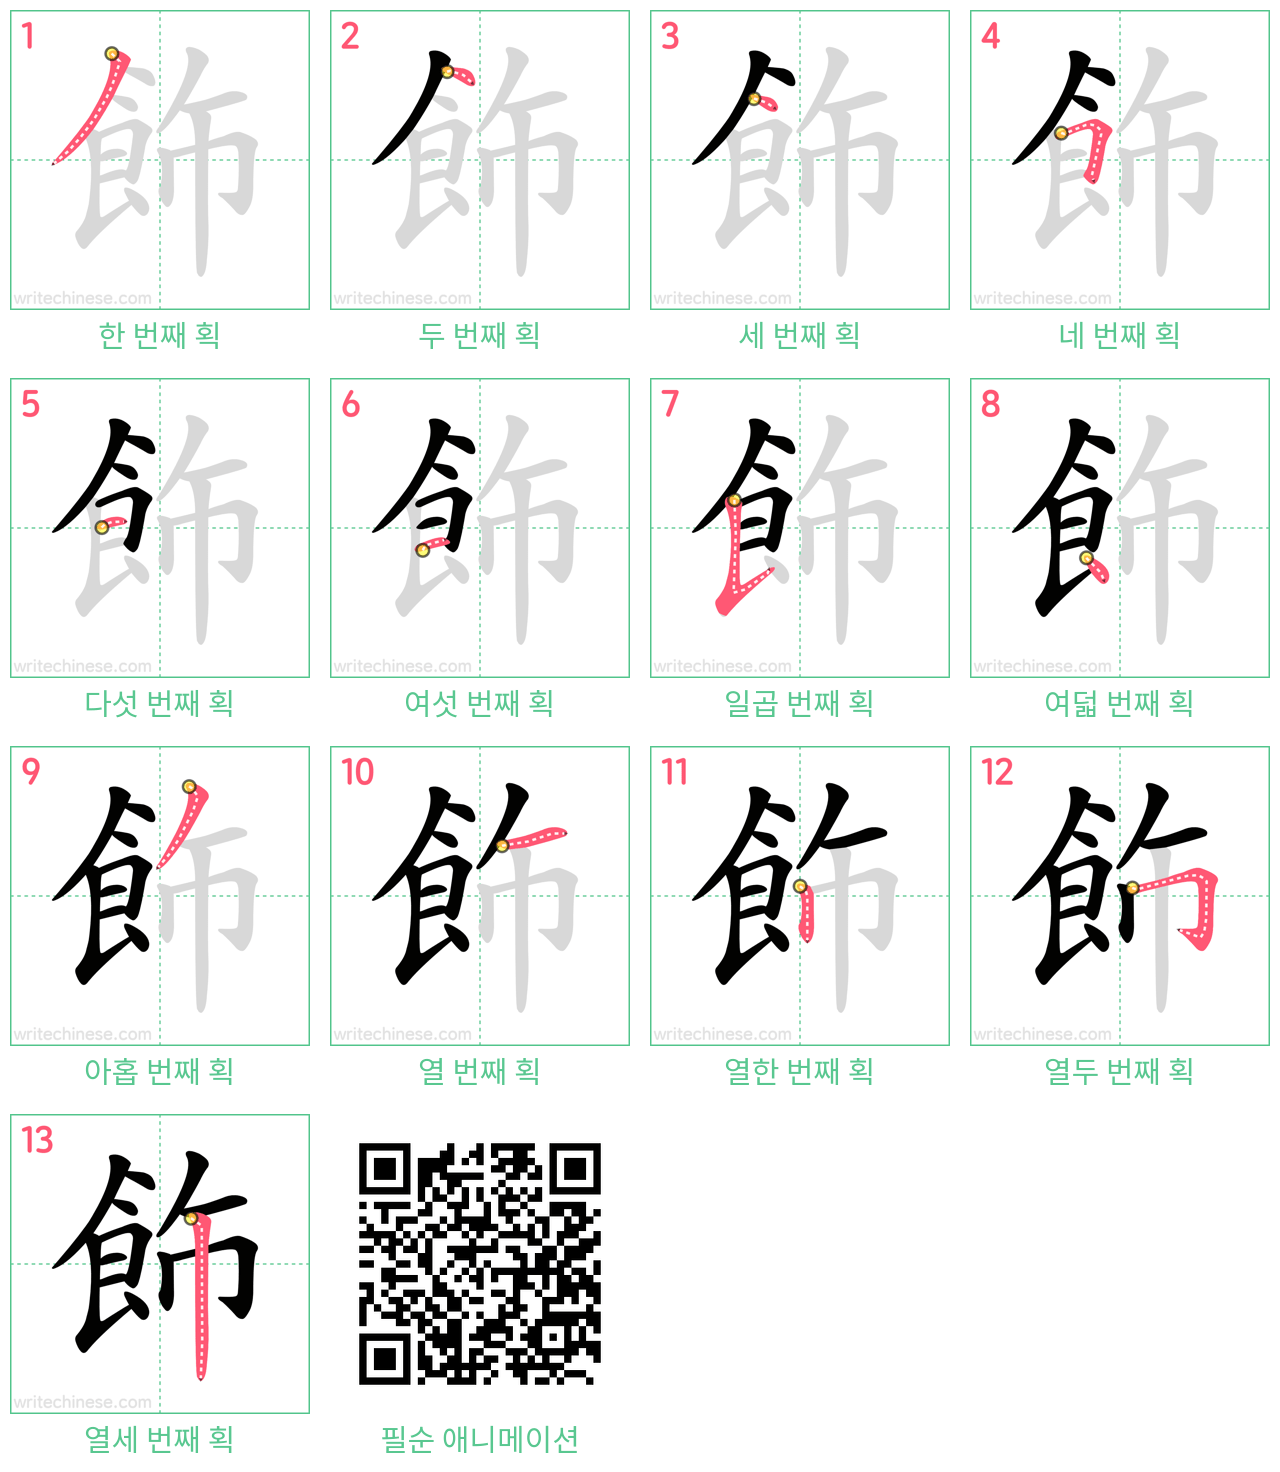 飾 step-by-step stroke order diagrams